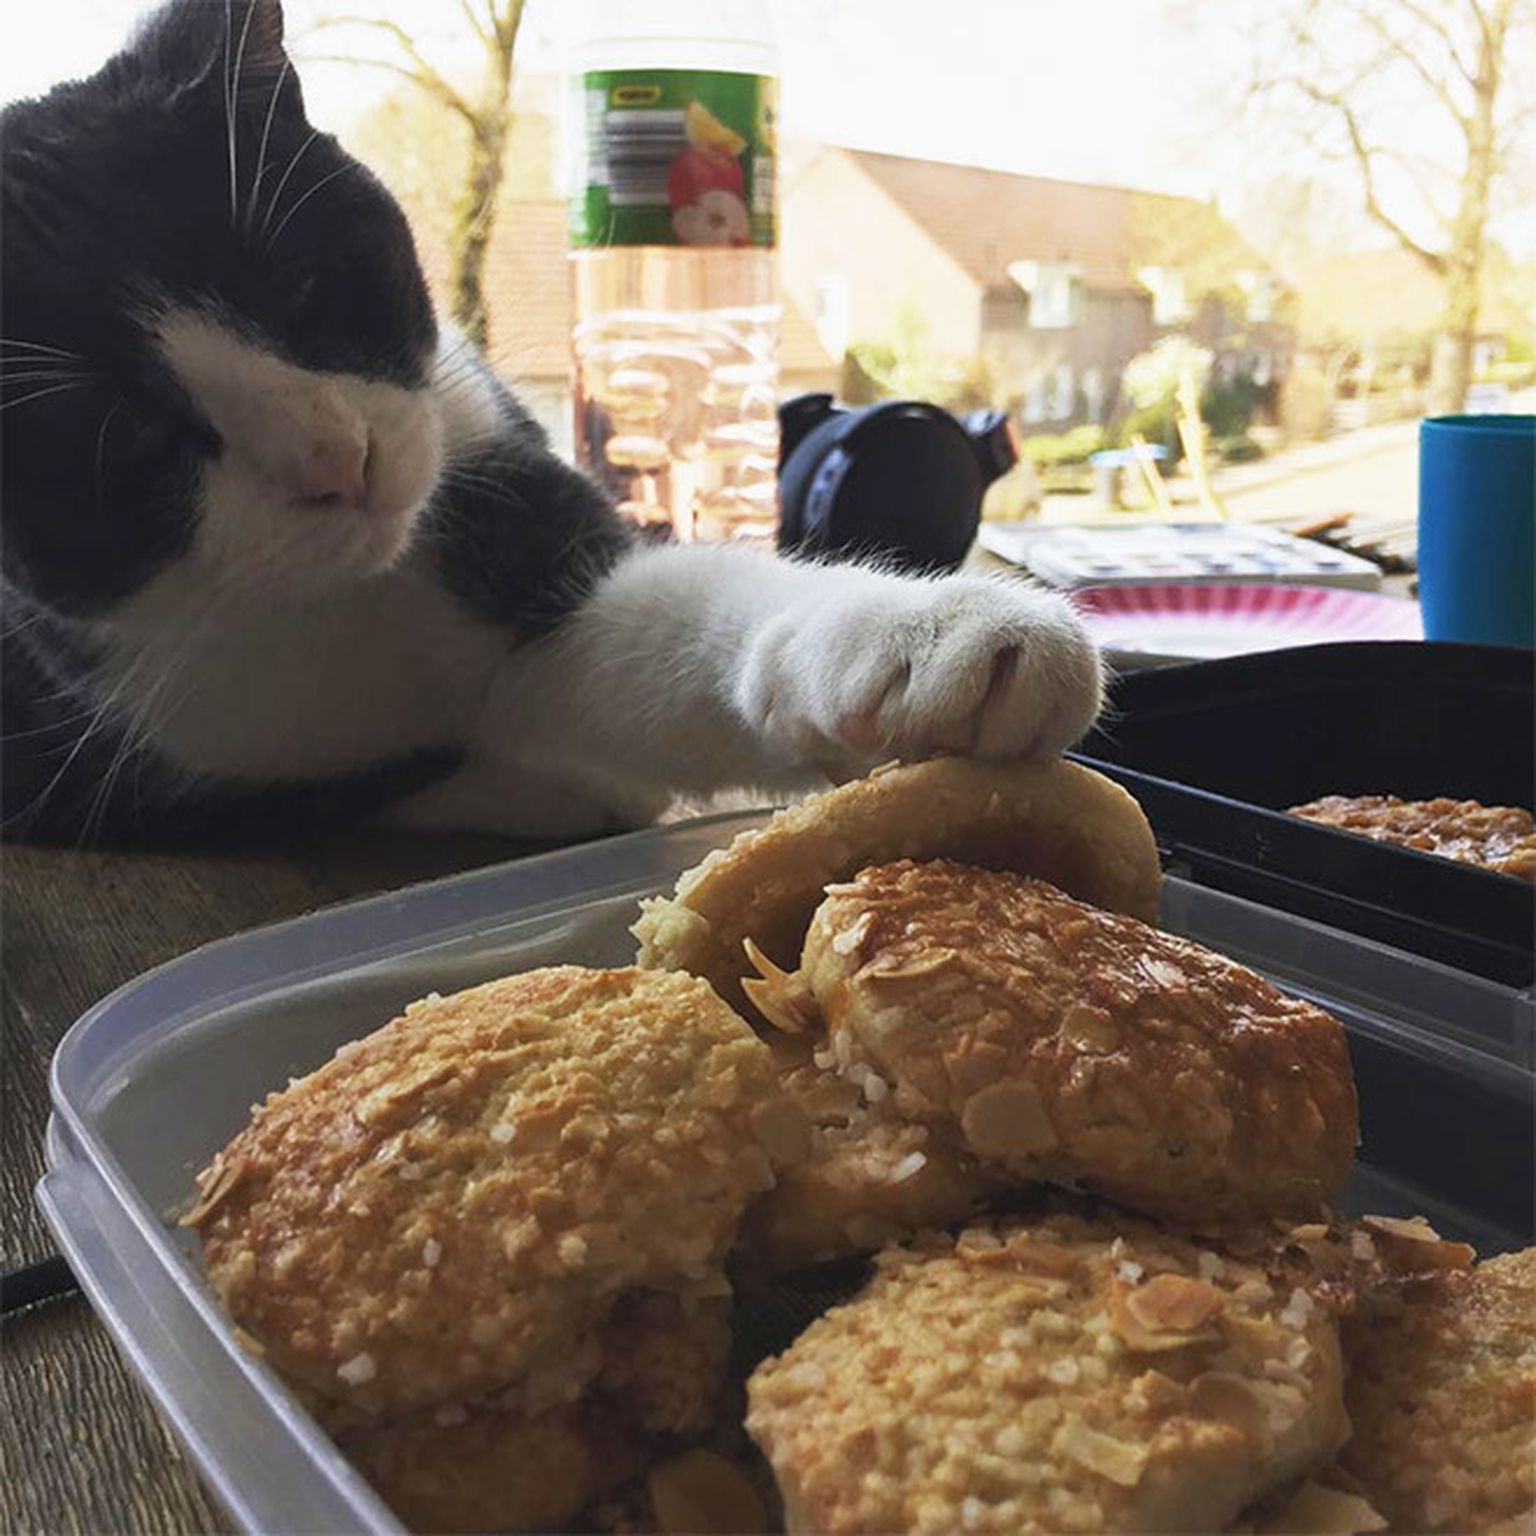 These your cats. Коты и еда. Еда для кошек. Кот котлета. Котик с едой.